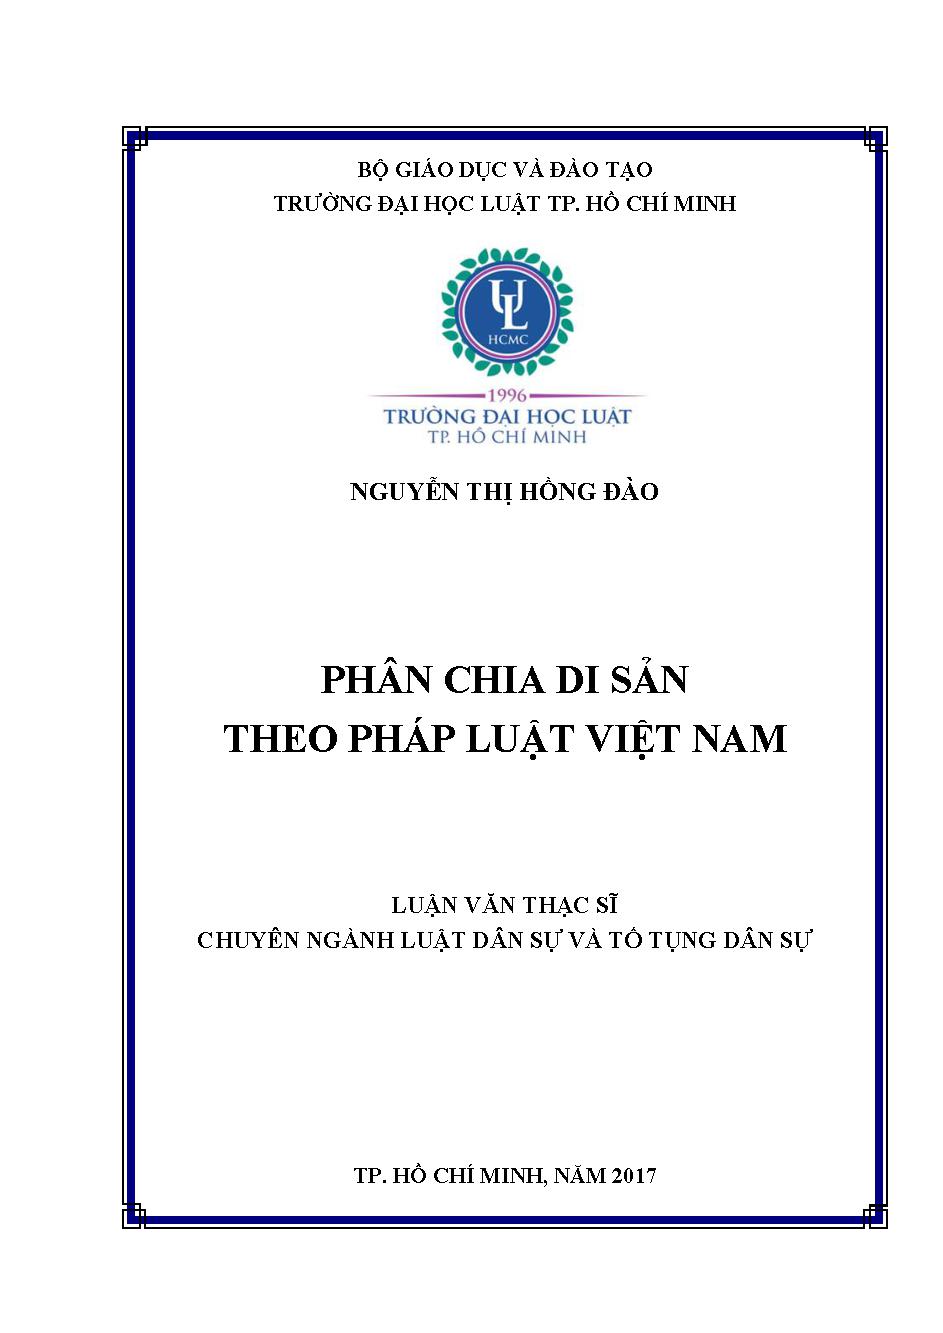 Phân chia di sản theo pháp luật Việt Nam